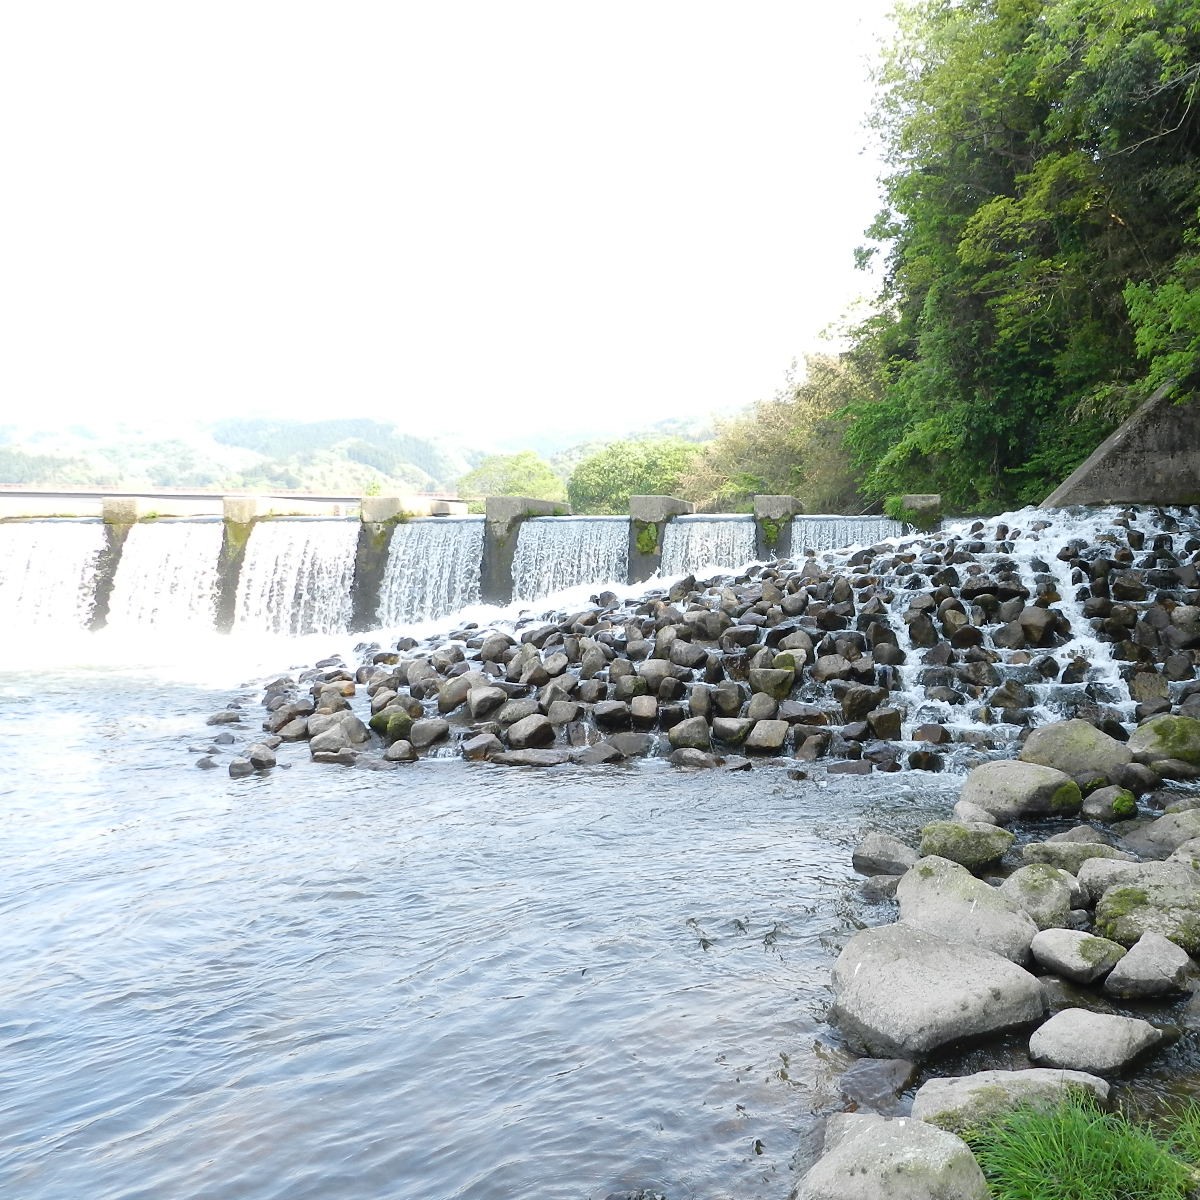 河川における自然再生技術 イメージ画像